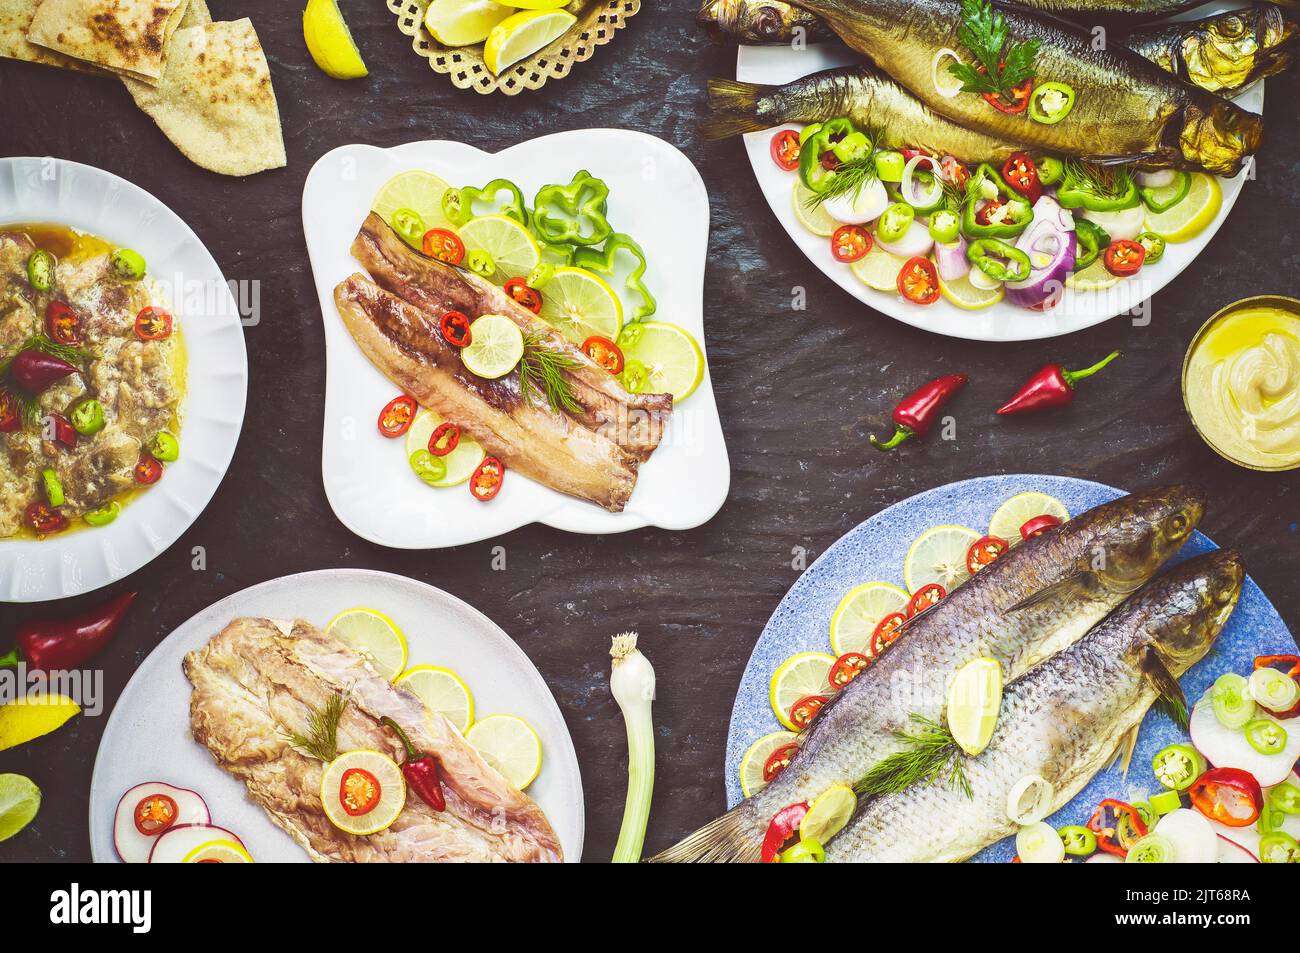 Während des Sham el-Nessim-Festivals werden mediterrane Speisen, traditionelle ägyptische geräucherte Heringe und gesalzener Fisch, Feseekh, gegessen. Stockfoto